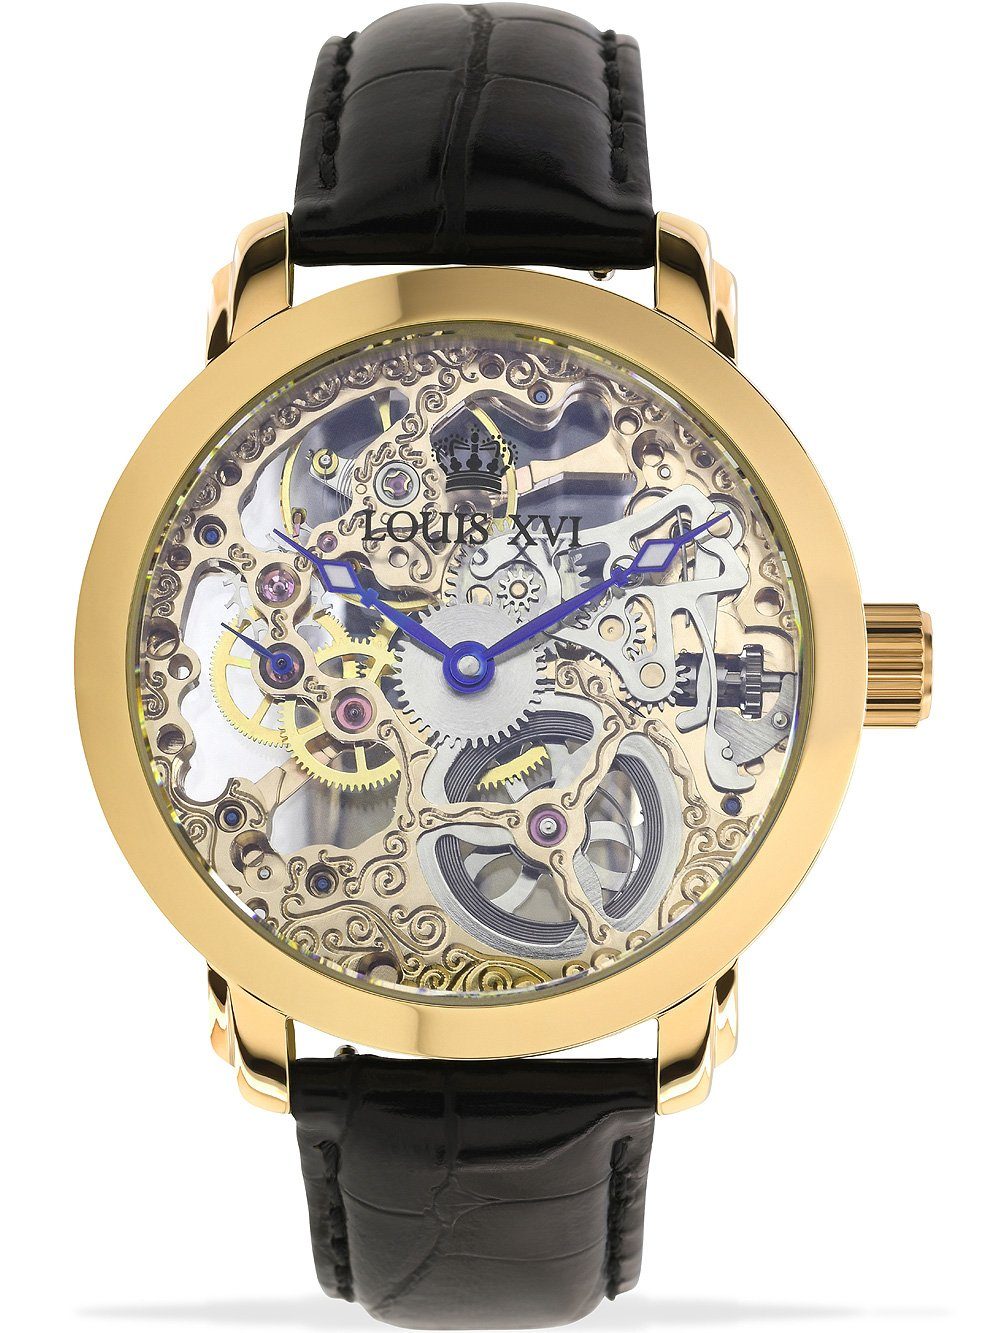 LOUIS XVI Schweizer Uhr Louis Uhr LXVI651 XVI Unisex 5ATM 43mm Versailles